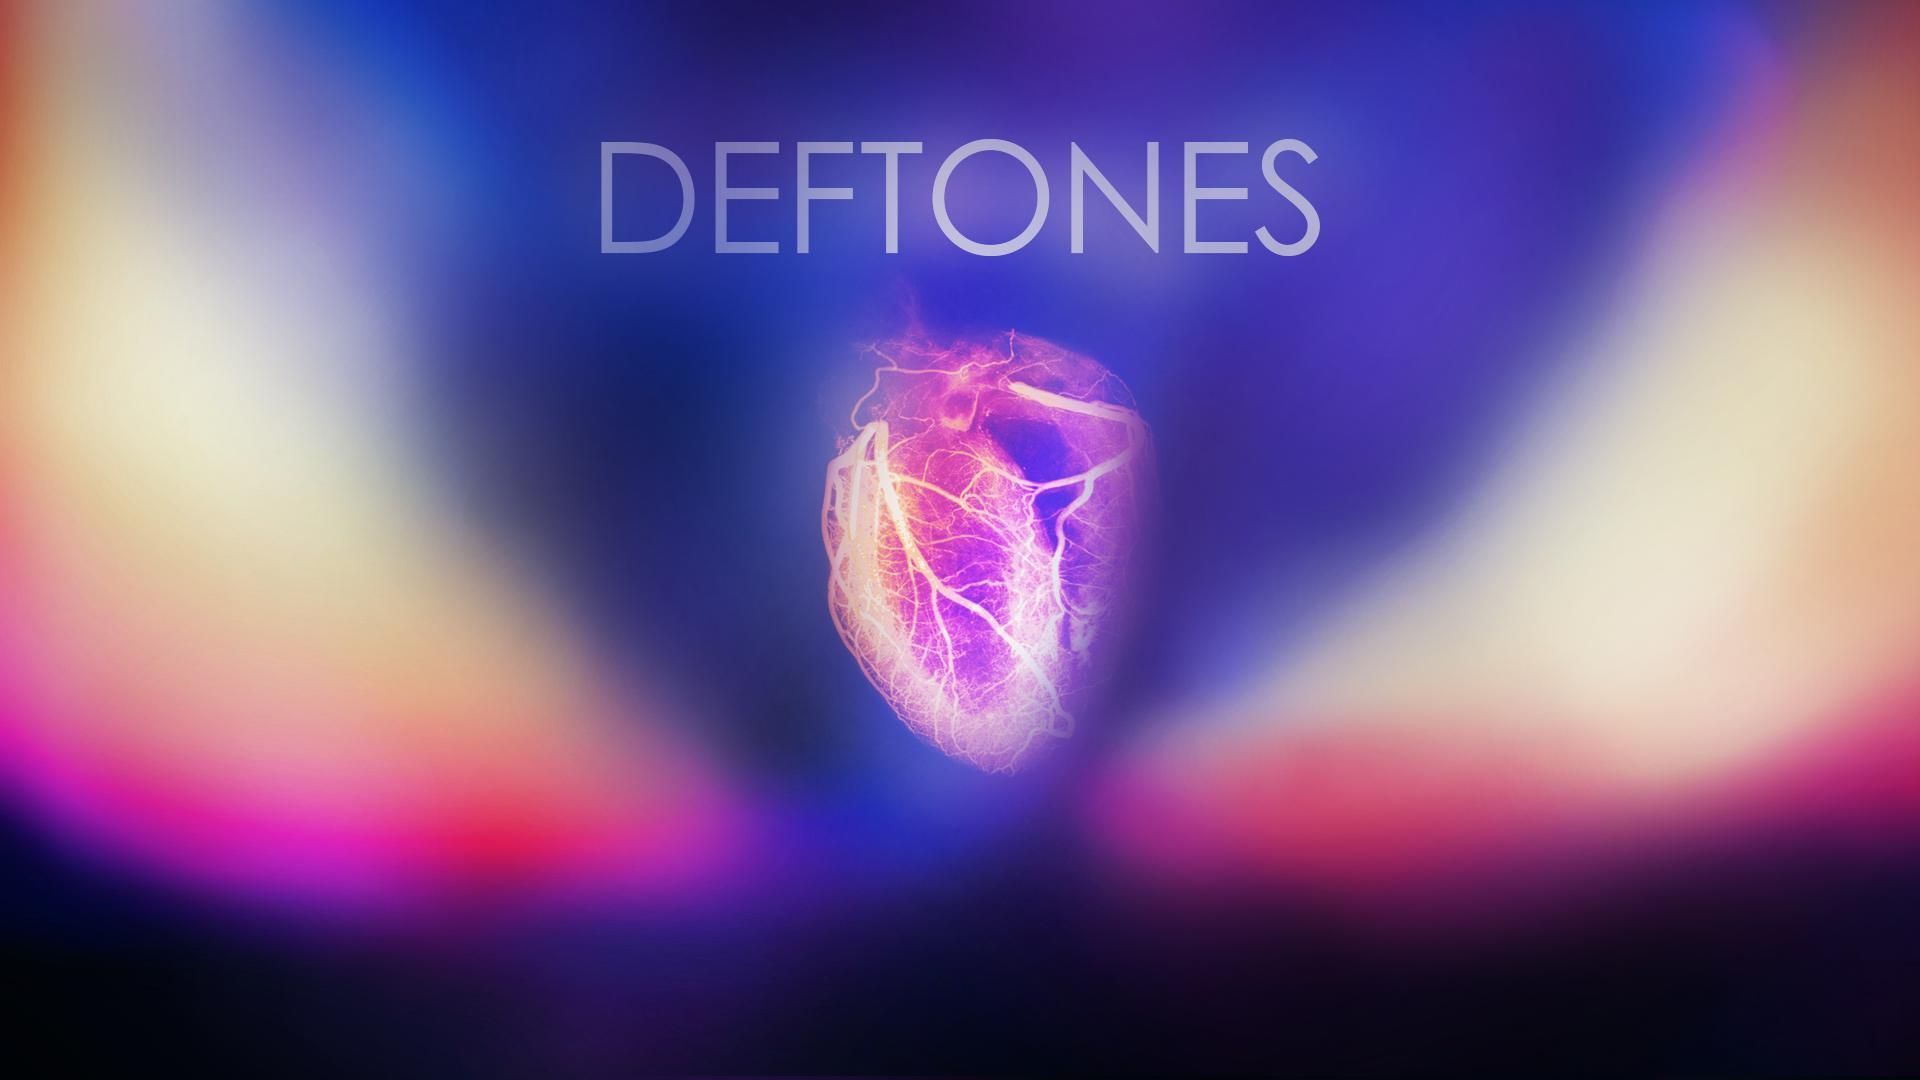 Deftones Music Videos